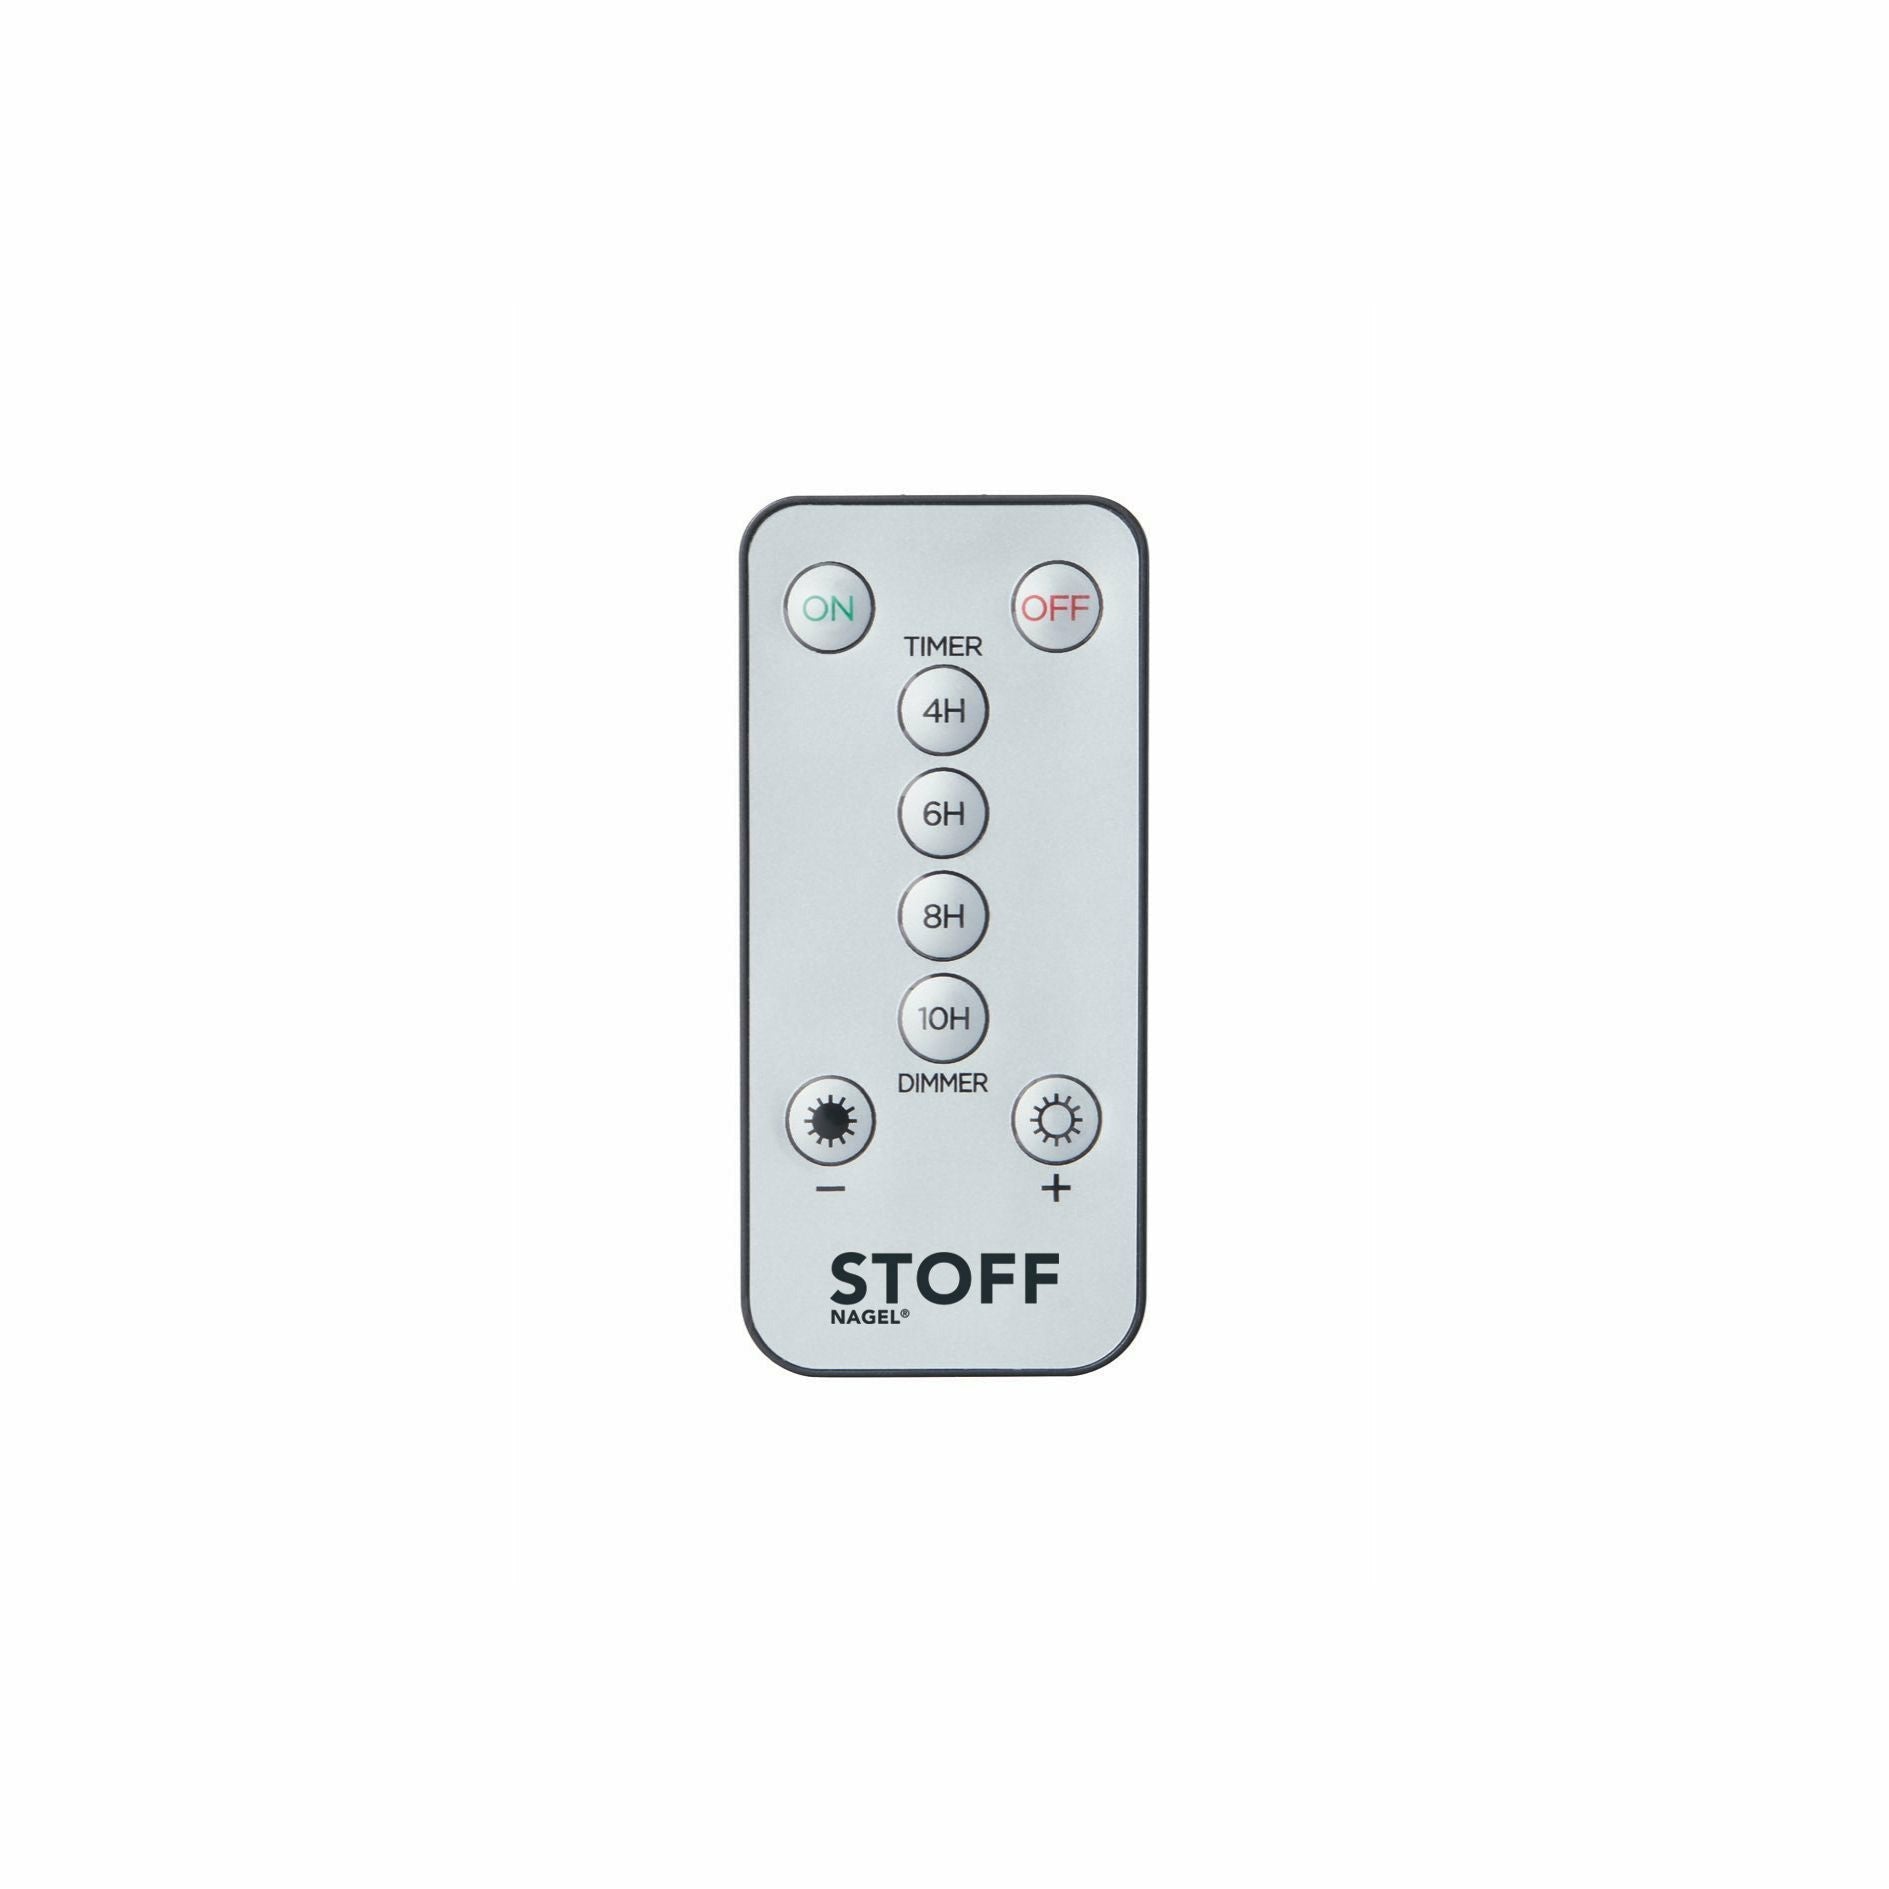 Stoff Nagel Remote Control By Uyuni Lighting